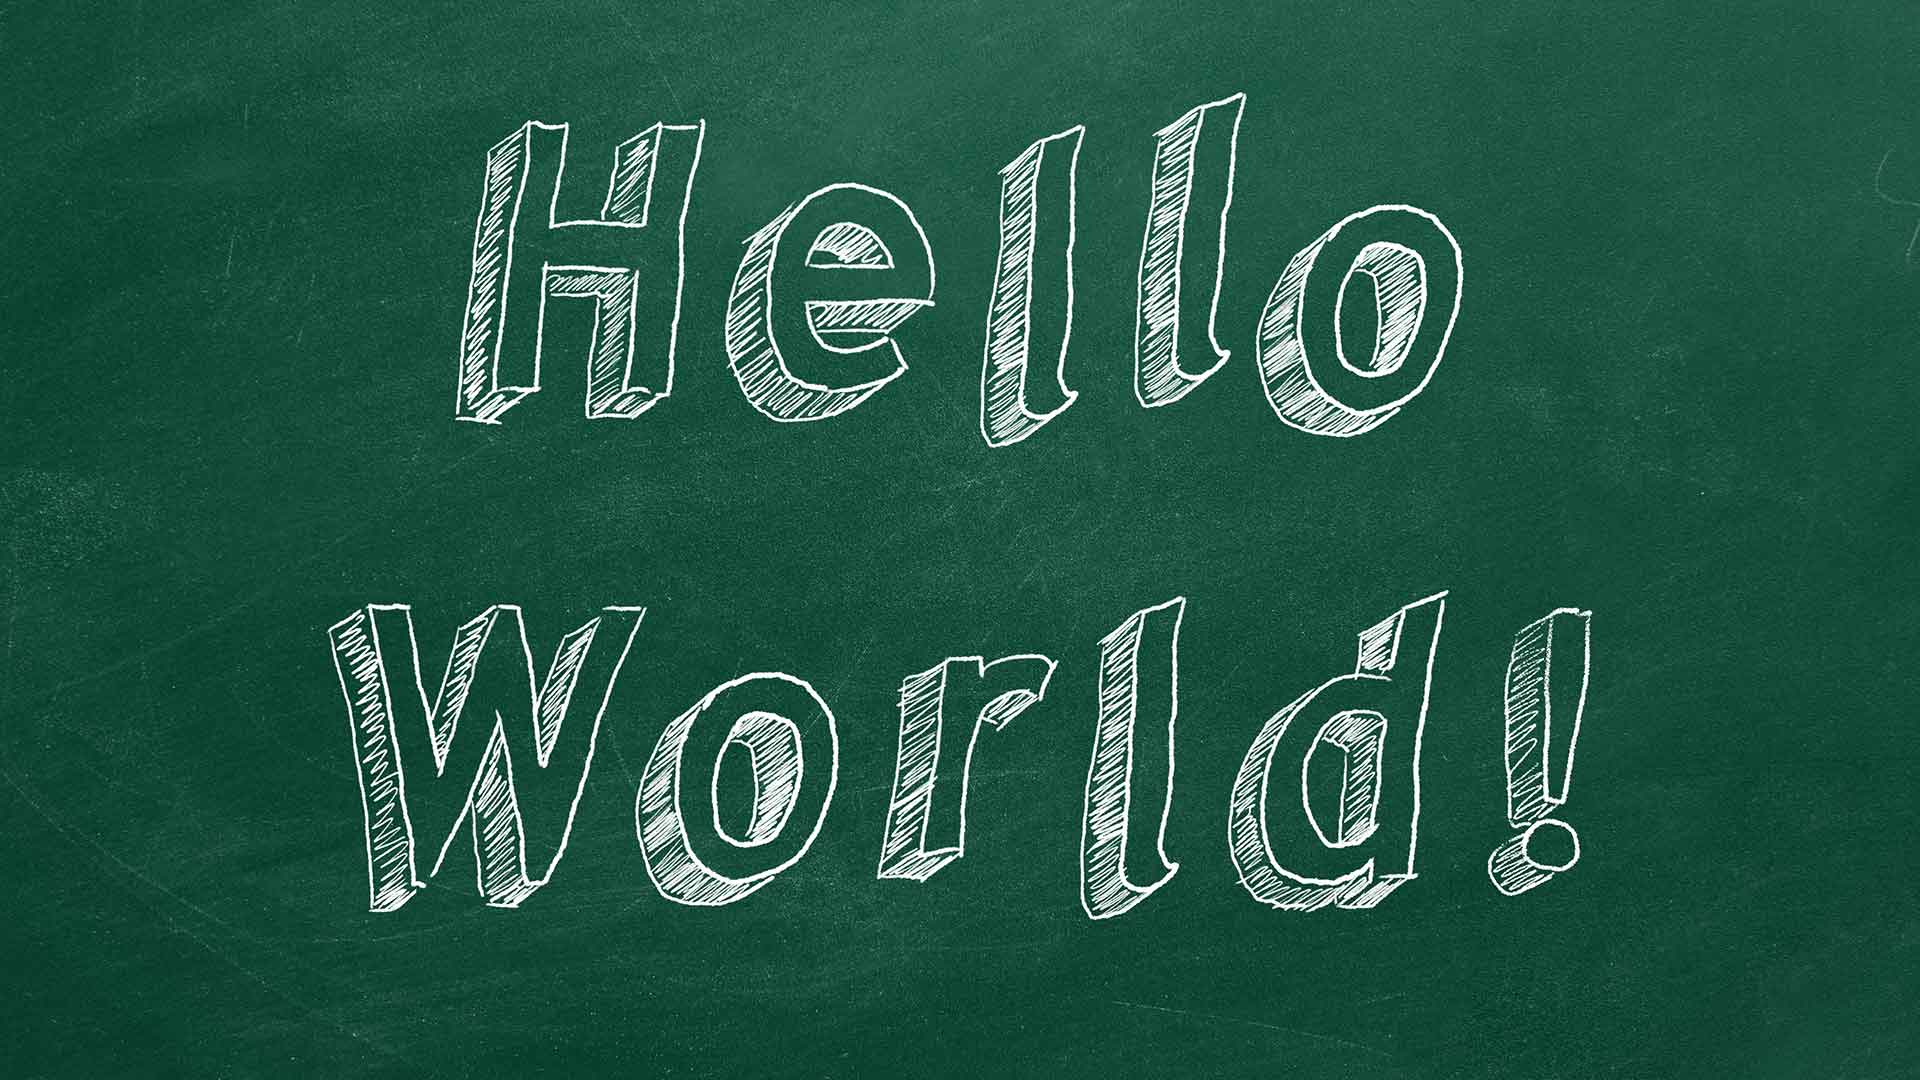 eBotschafter.com - Daniel Schenk - Hello World Green Chalkboard - B1